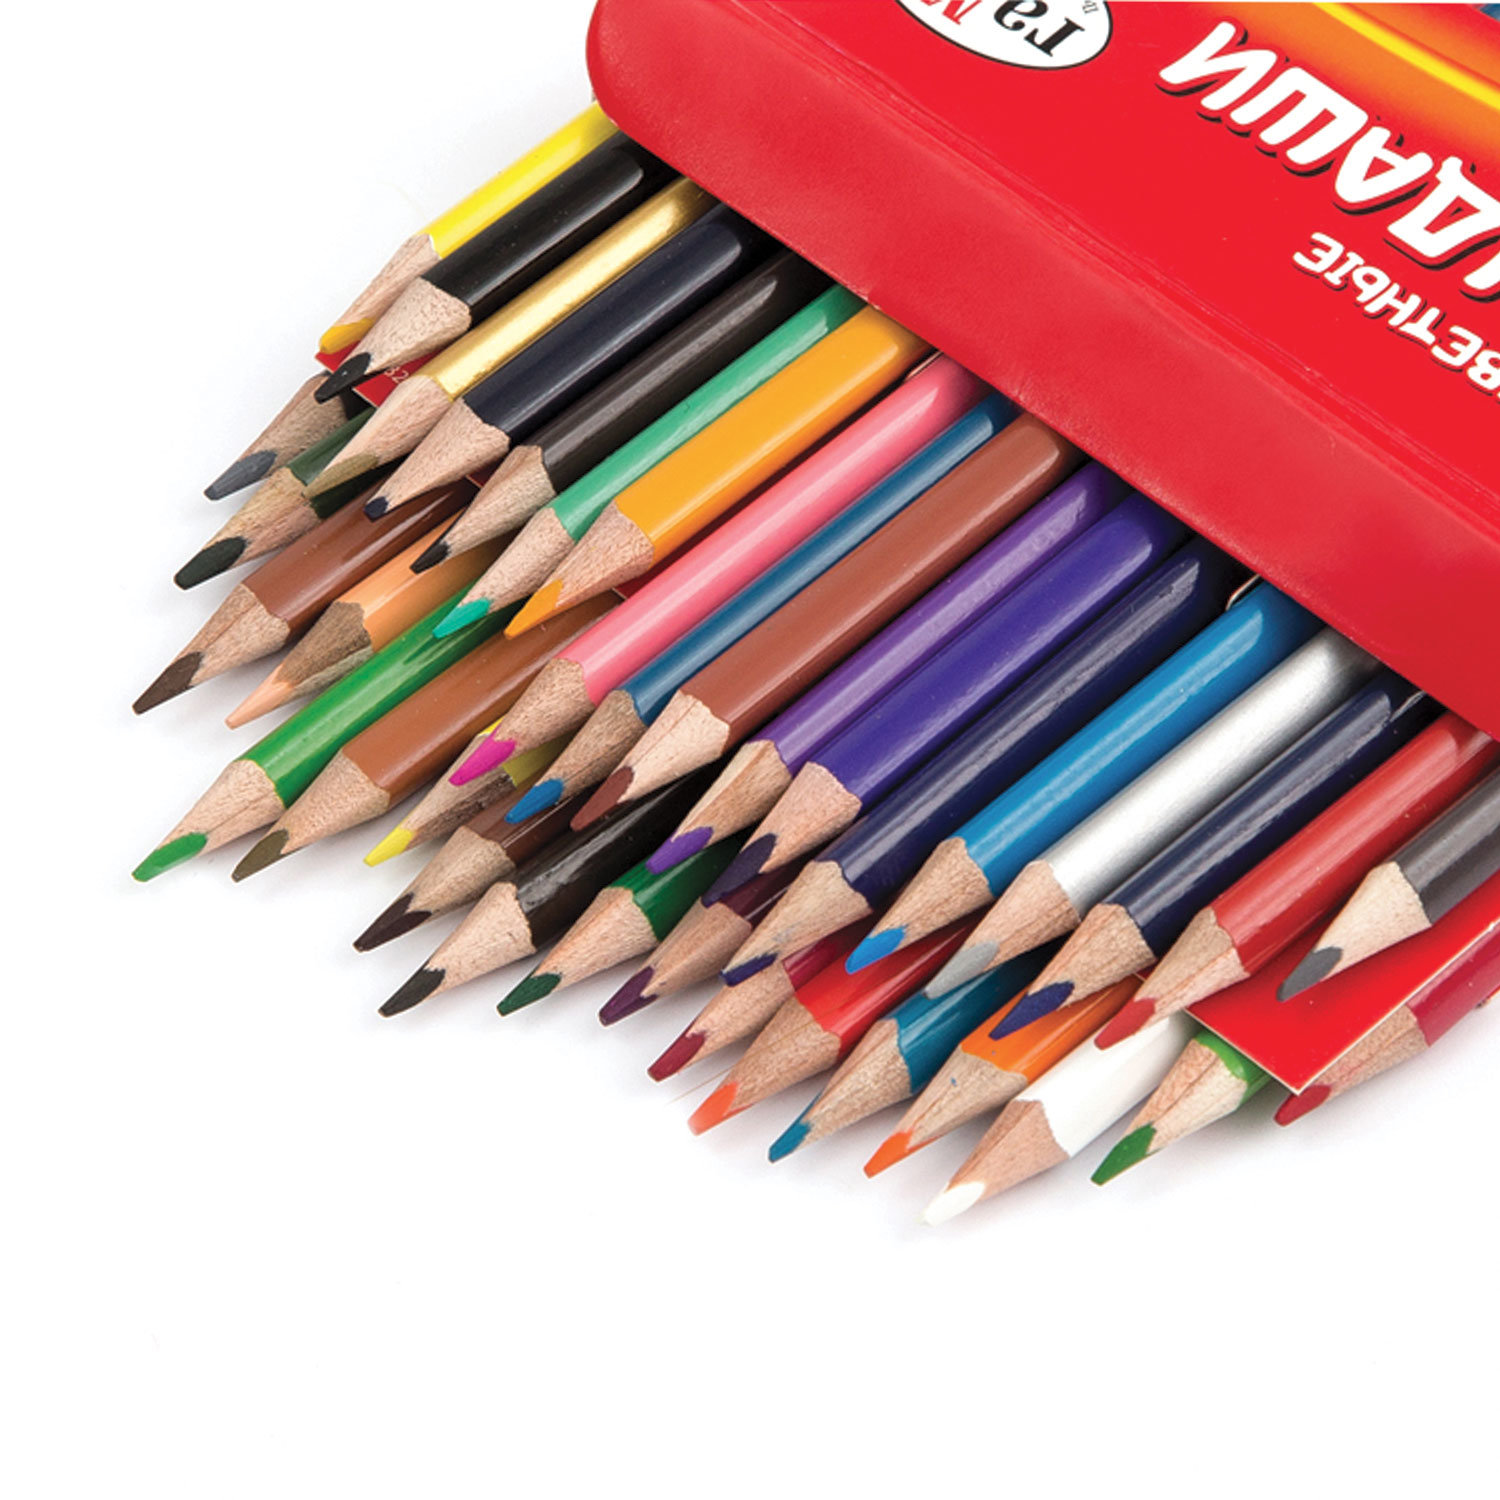 Недорогие цветные. Гамма карандаши трехгранные цветные 36. Карандаши 36 цветов гамма. Цветные карандаши трёхгранные 36 цветов.